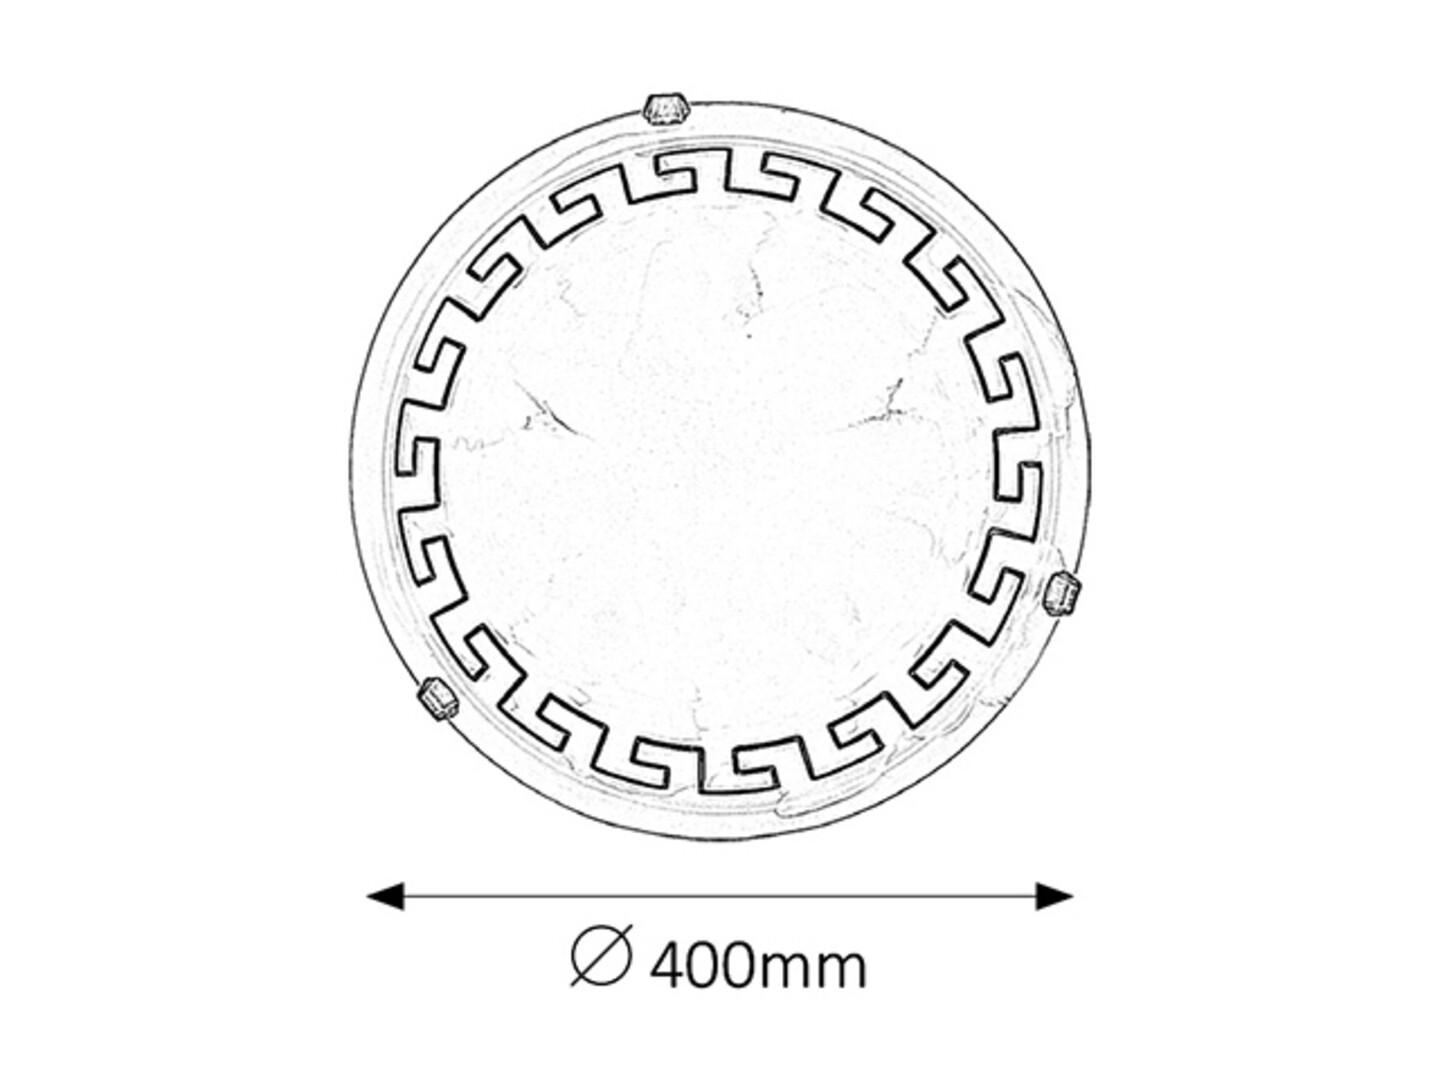 Deckenleuchte 2 Spots Etrusco 7649, E27, Metall, weiß, rund, Mediterran, ø400mm